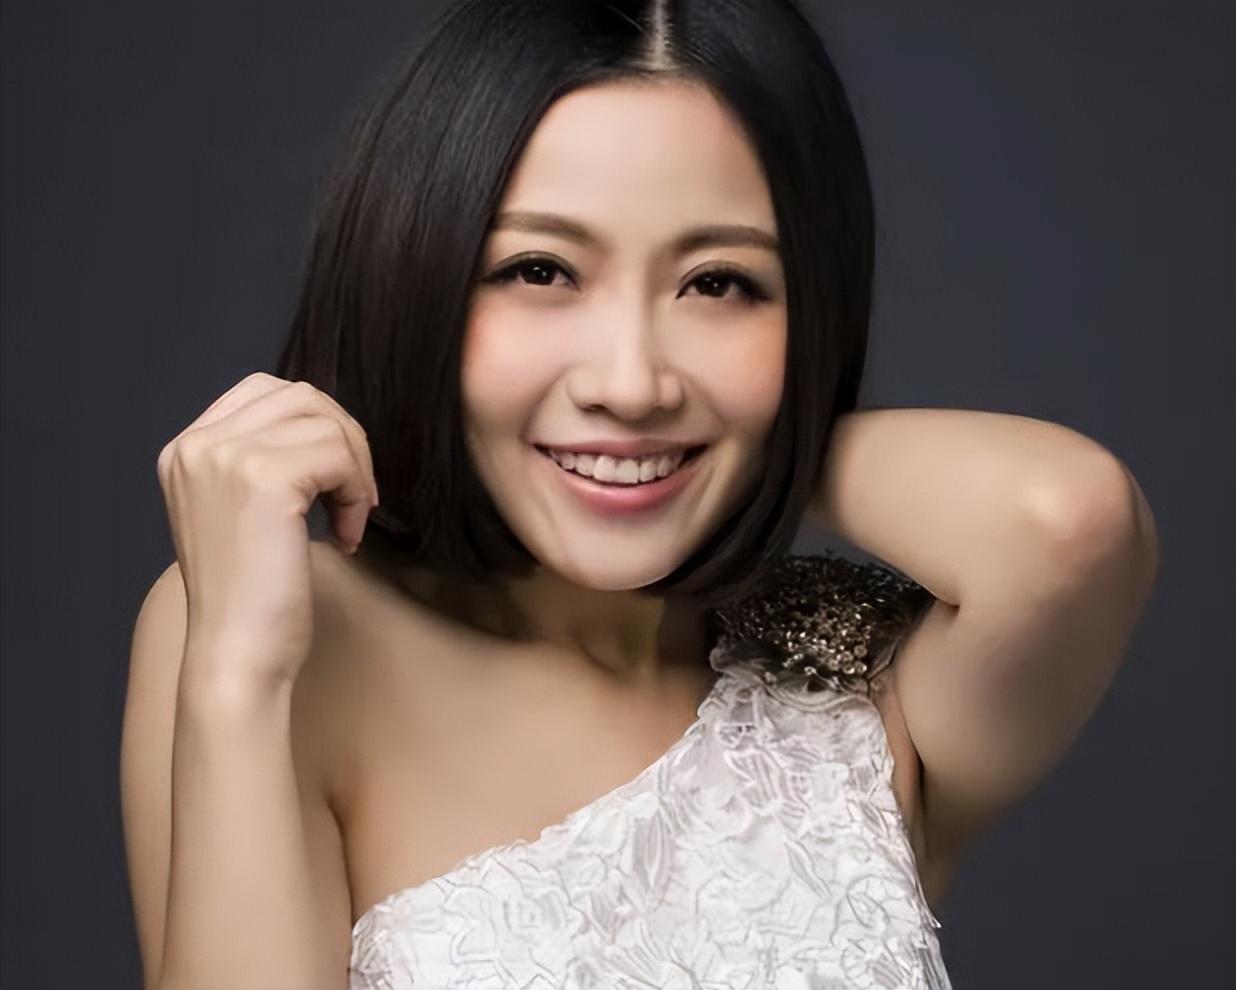 姚贝娜：一个用生命歌唱的女孩 - 资讯 - 中国广告 创刊于1981年 中国第一本广告专业杂志 中国品牌营销与融合传播平台